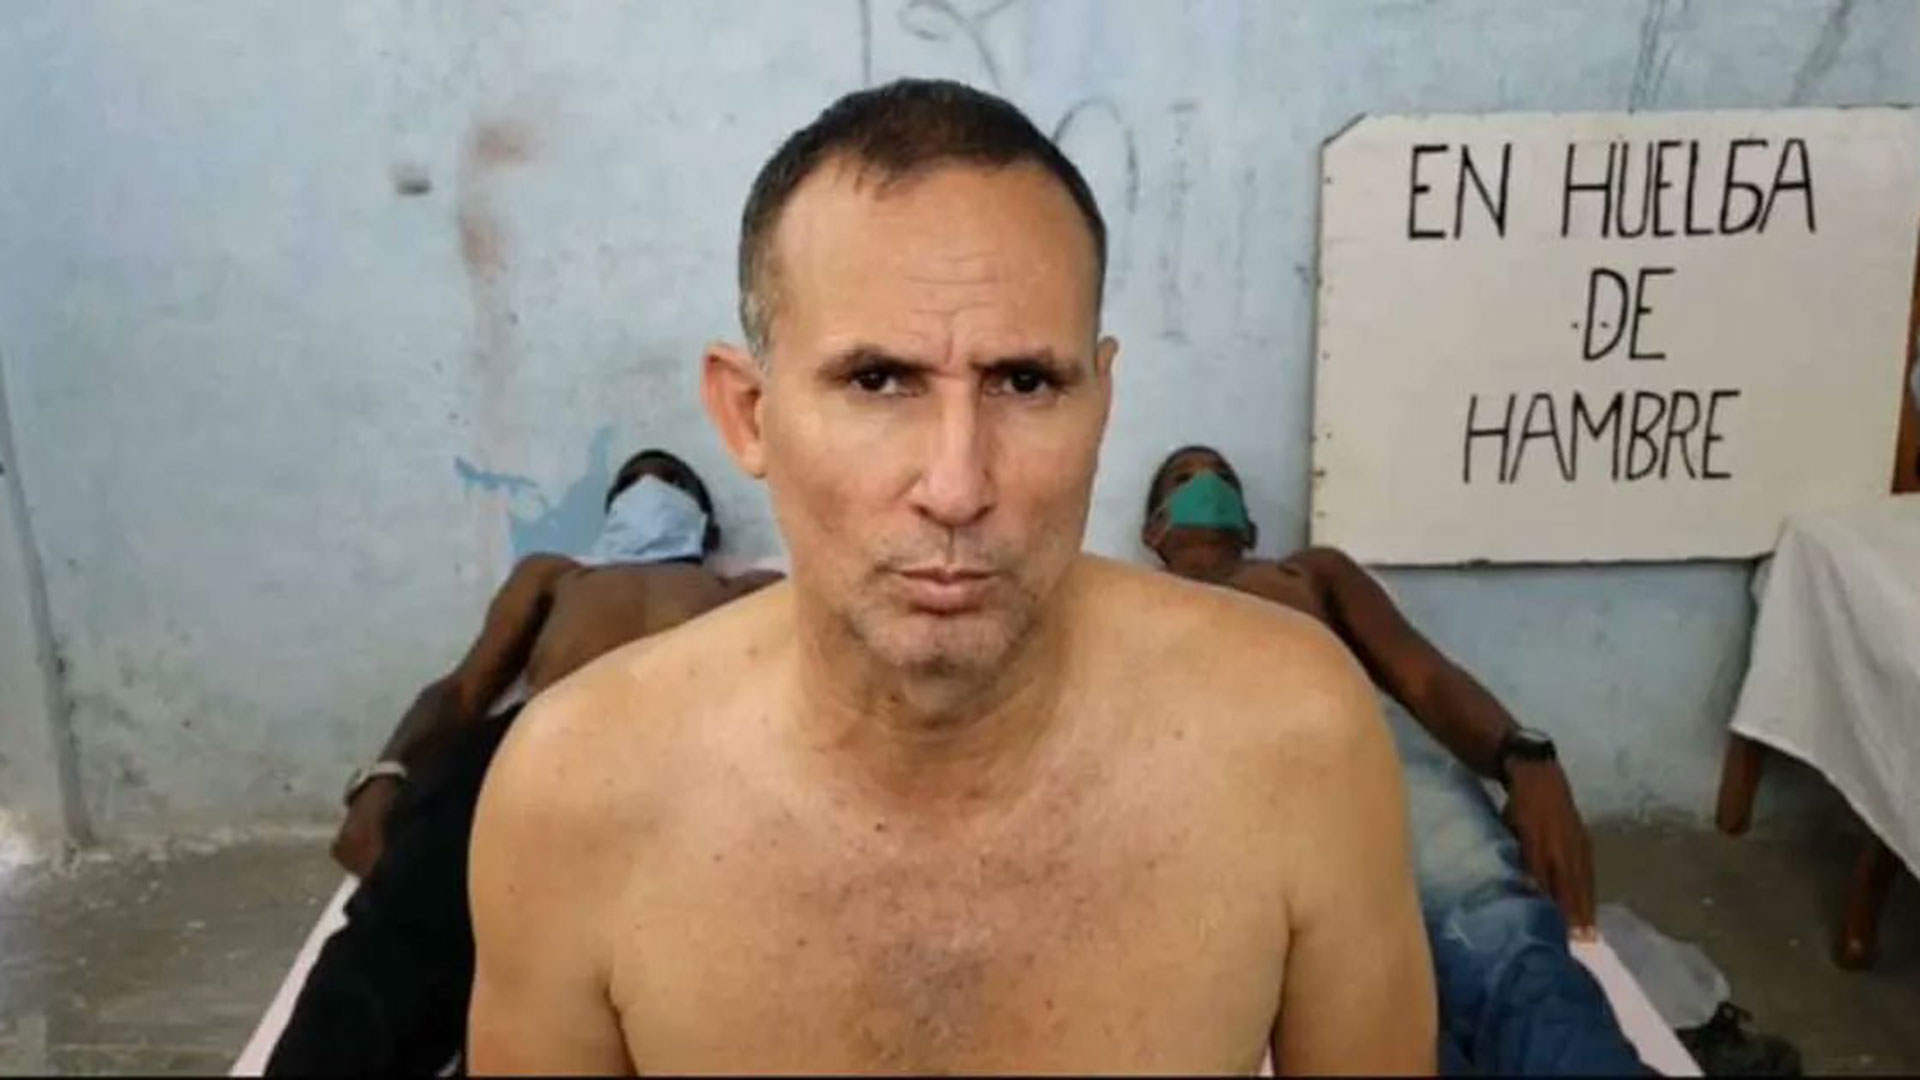 Nelva Ortega-Tamayo, esposa del preso político cubano José Daniel Ferrer: “Tememos muchísimo de que su vida esté corriendo grave peligro”